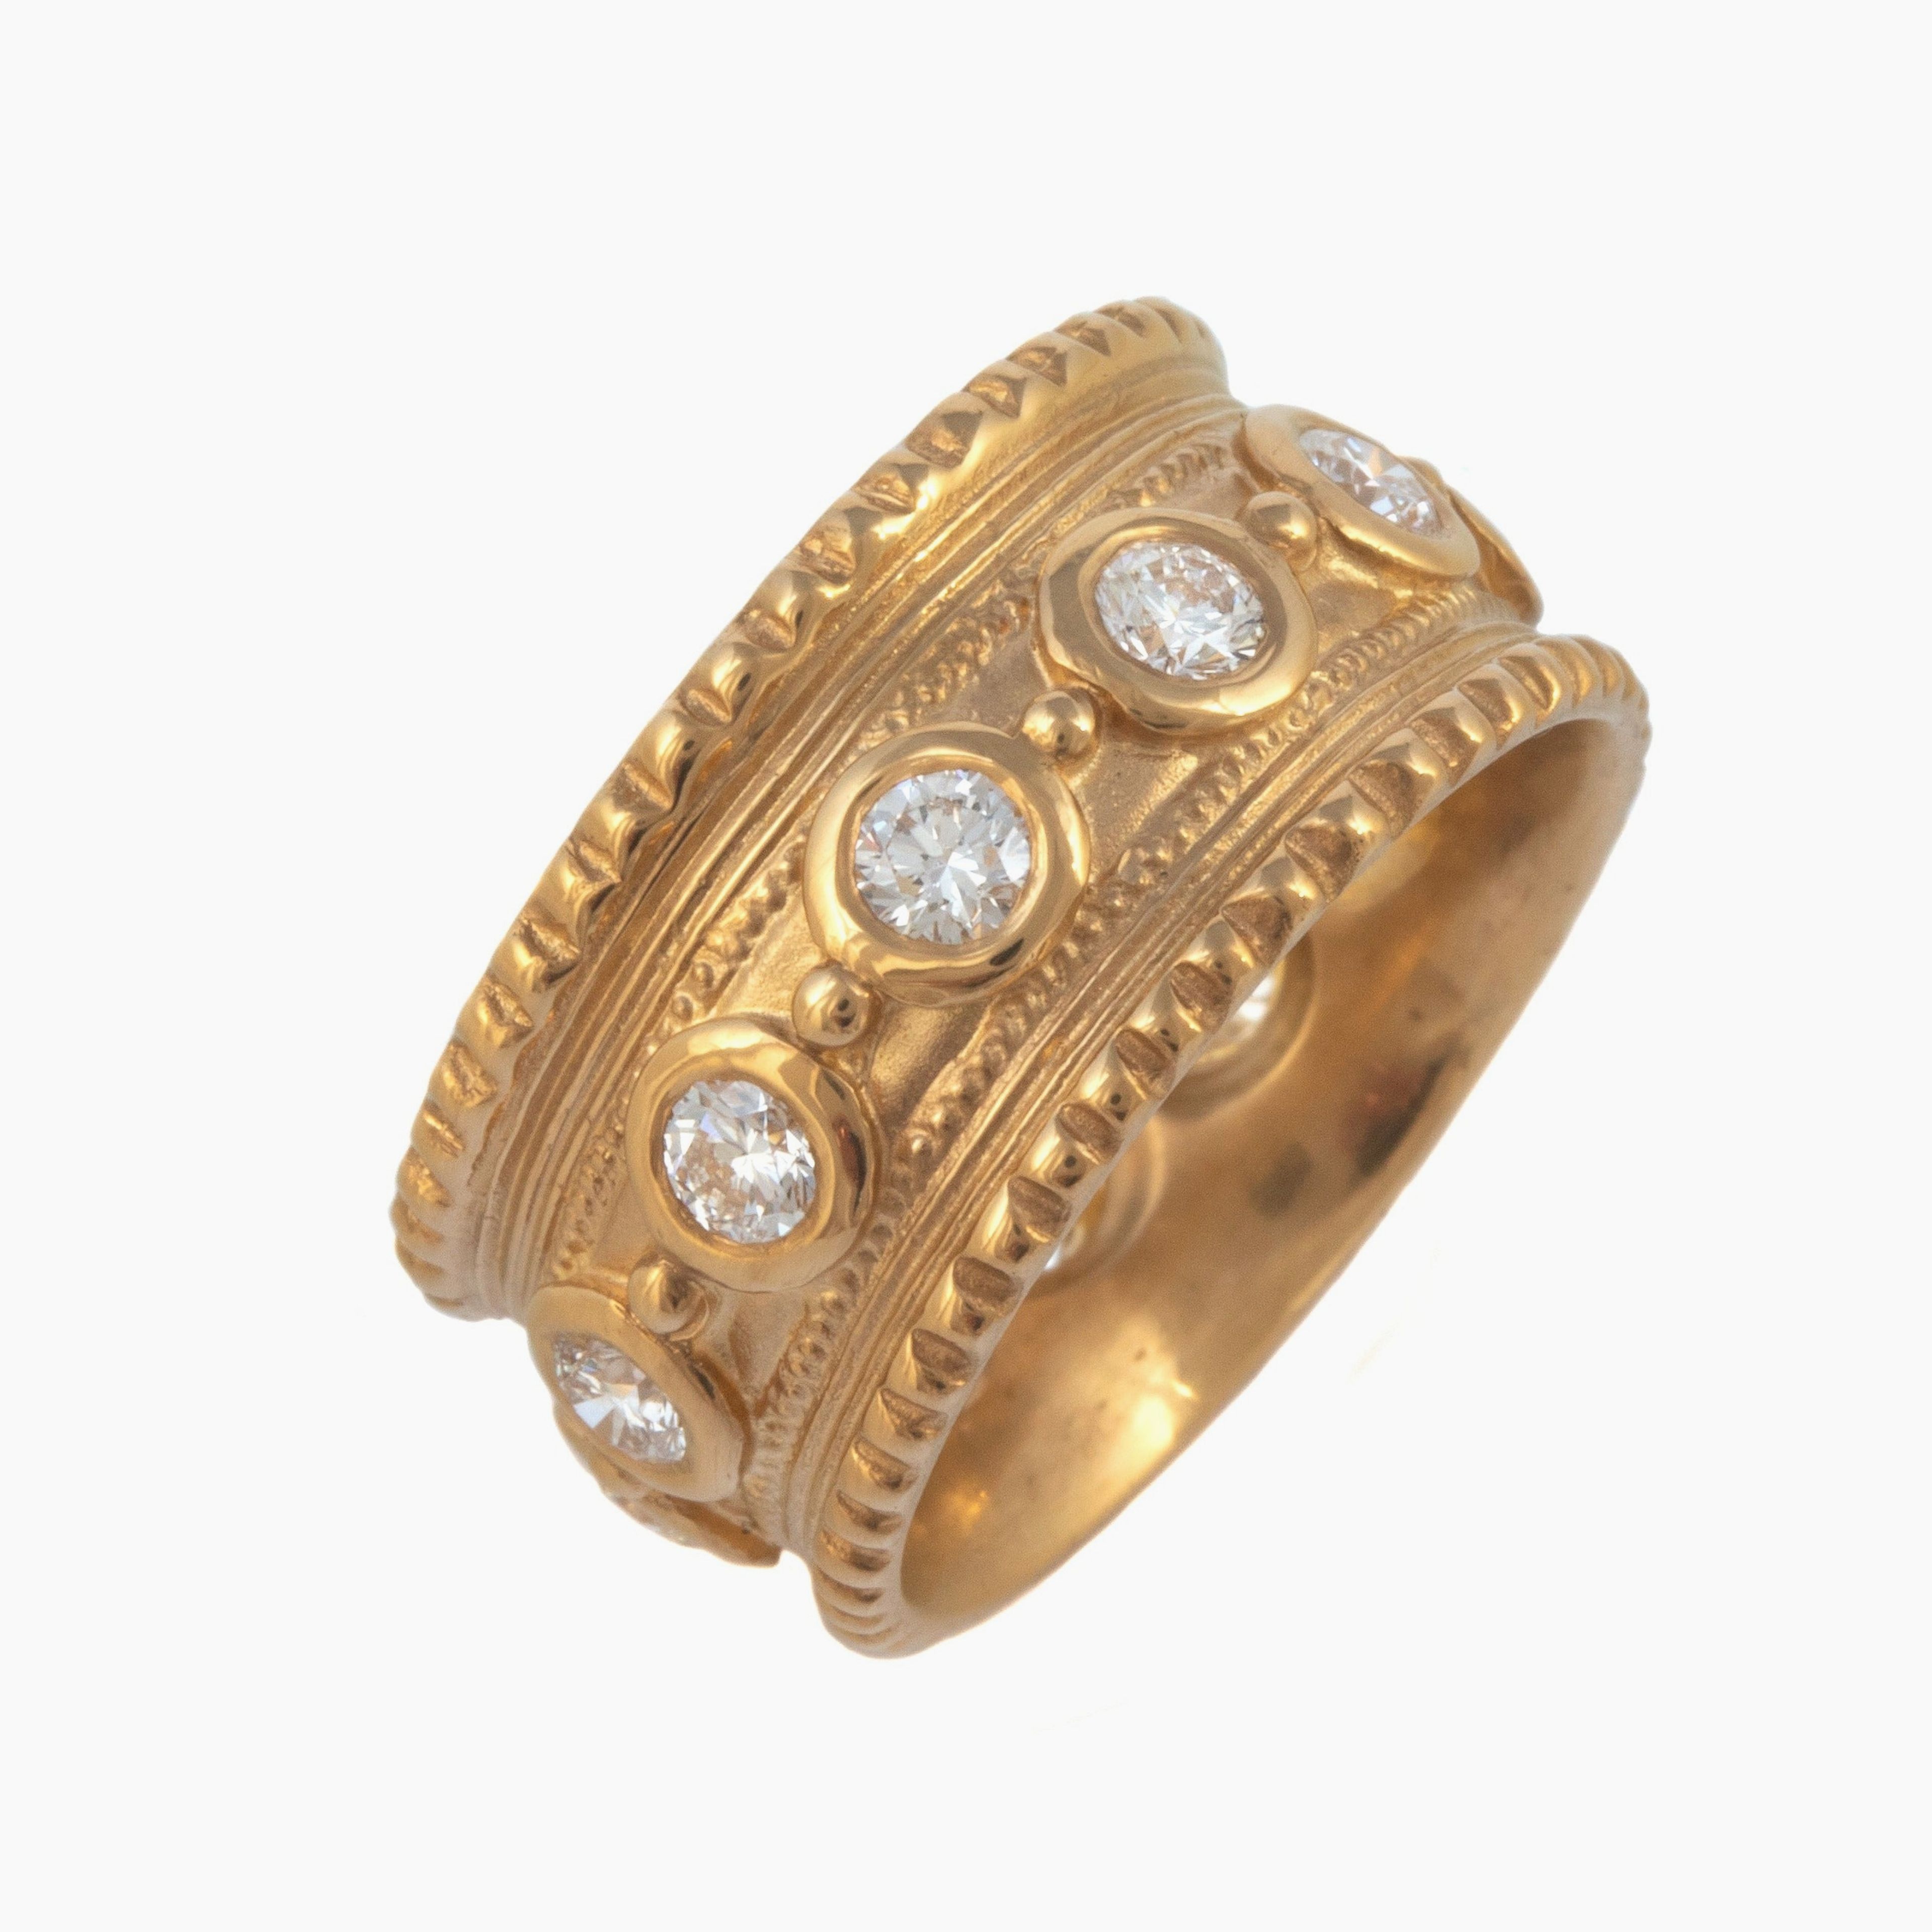 Minos Ring with Diamonds